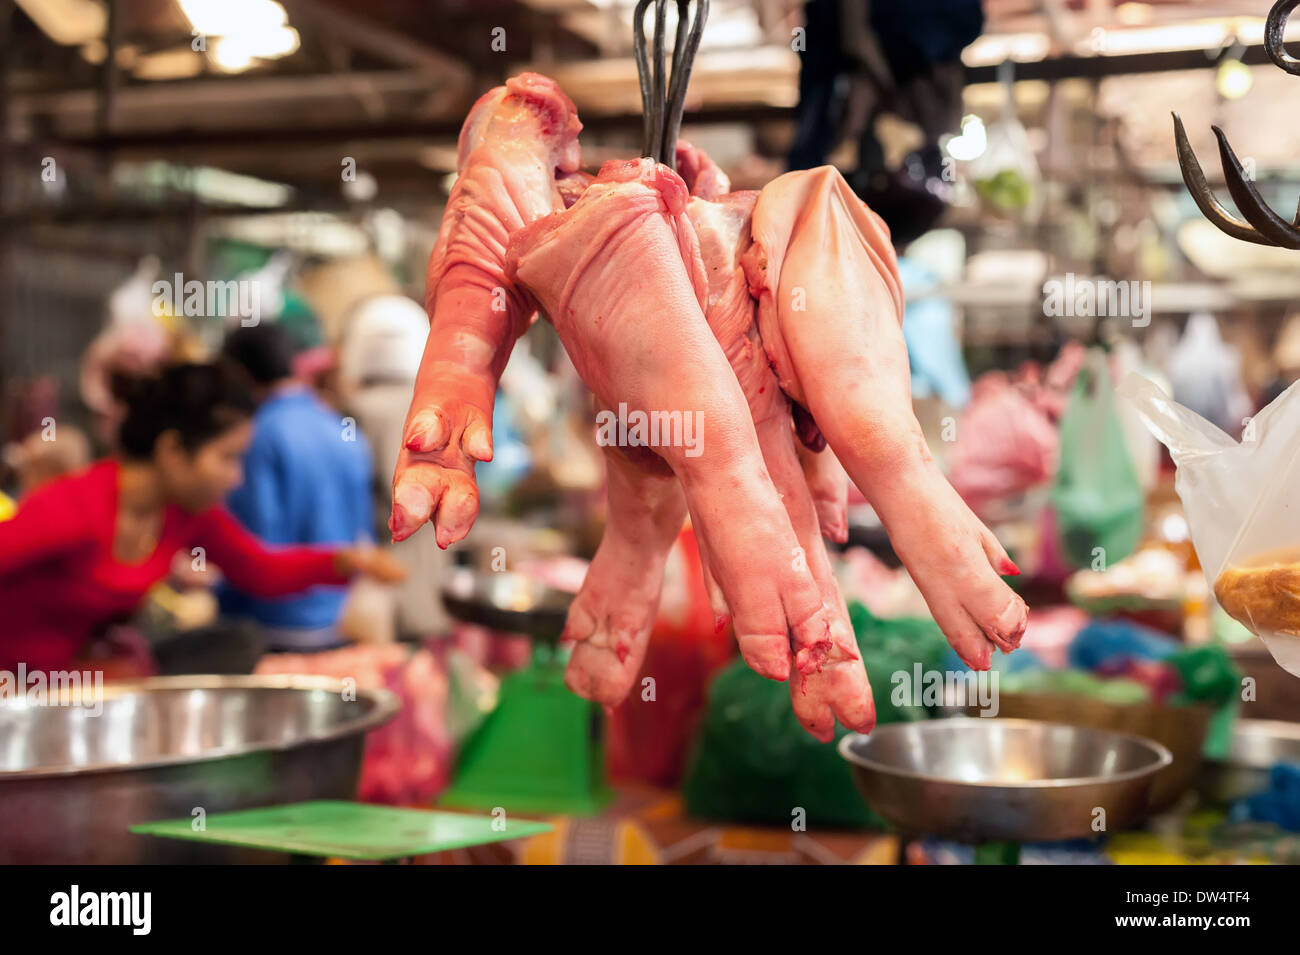 Les jambes de porc cru à vendre au marché des aliments asiatiques suspendus. Cambodge Banque D'Images